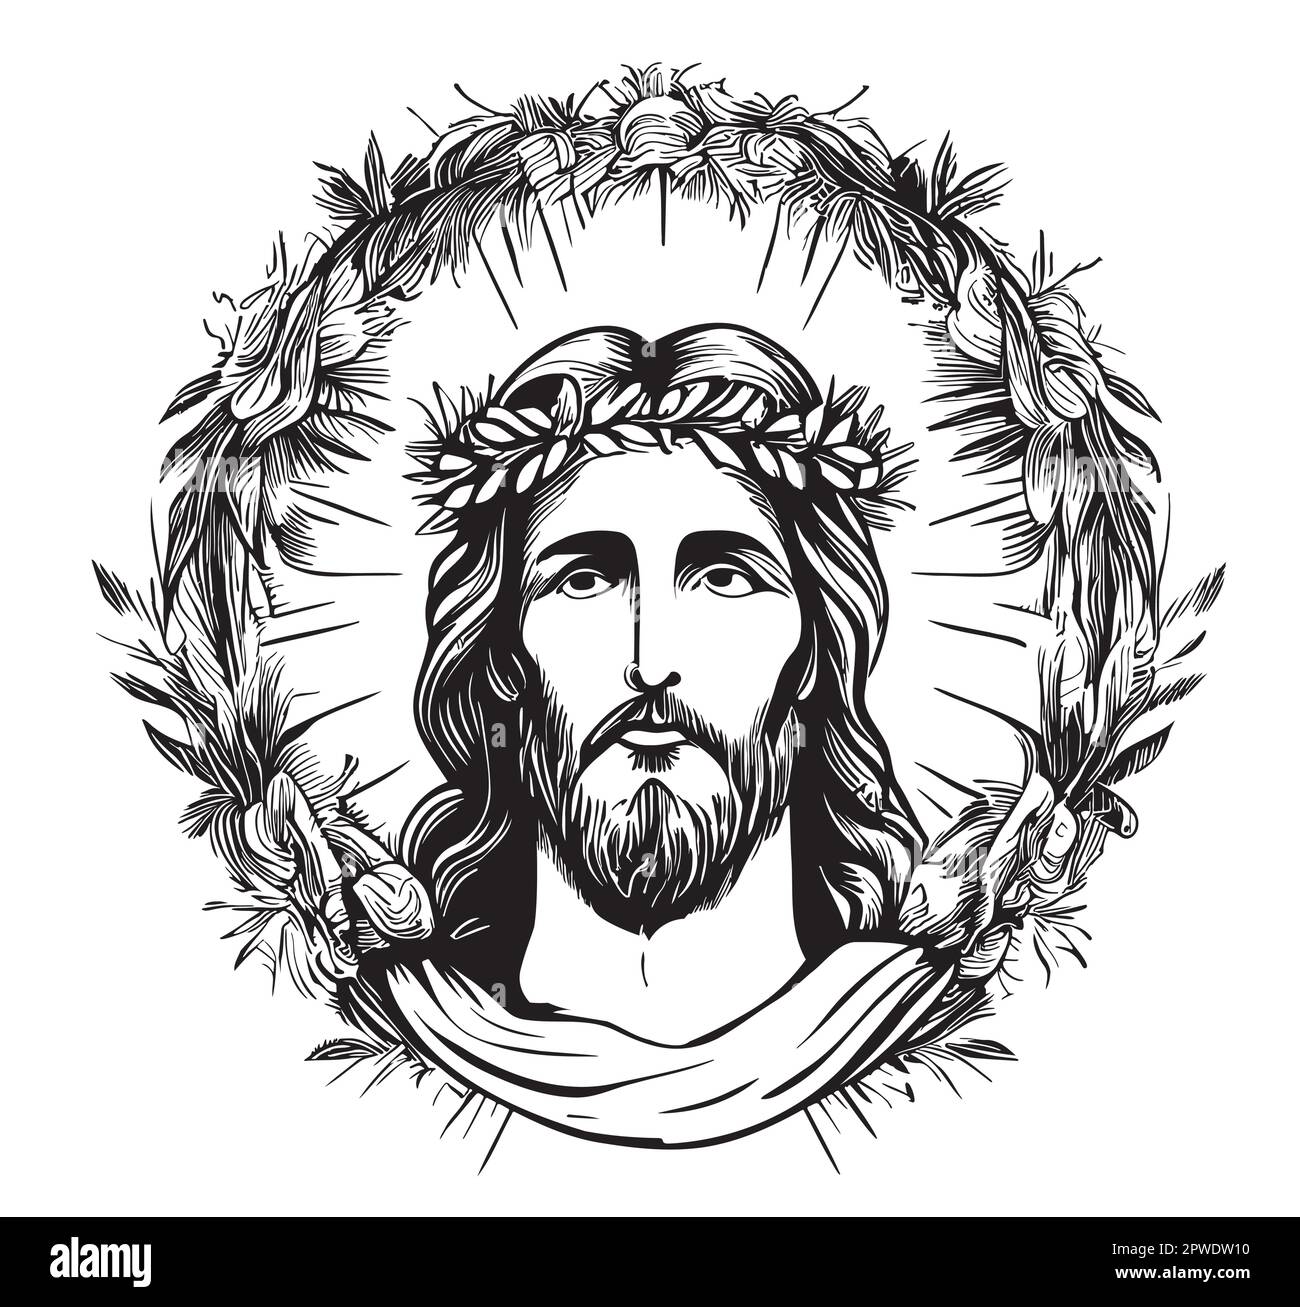 Portrait de Jésus dans une couronne croquis dessiné à la main dans le style de la caniche Illustration de Vecteur